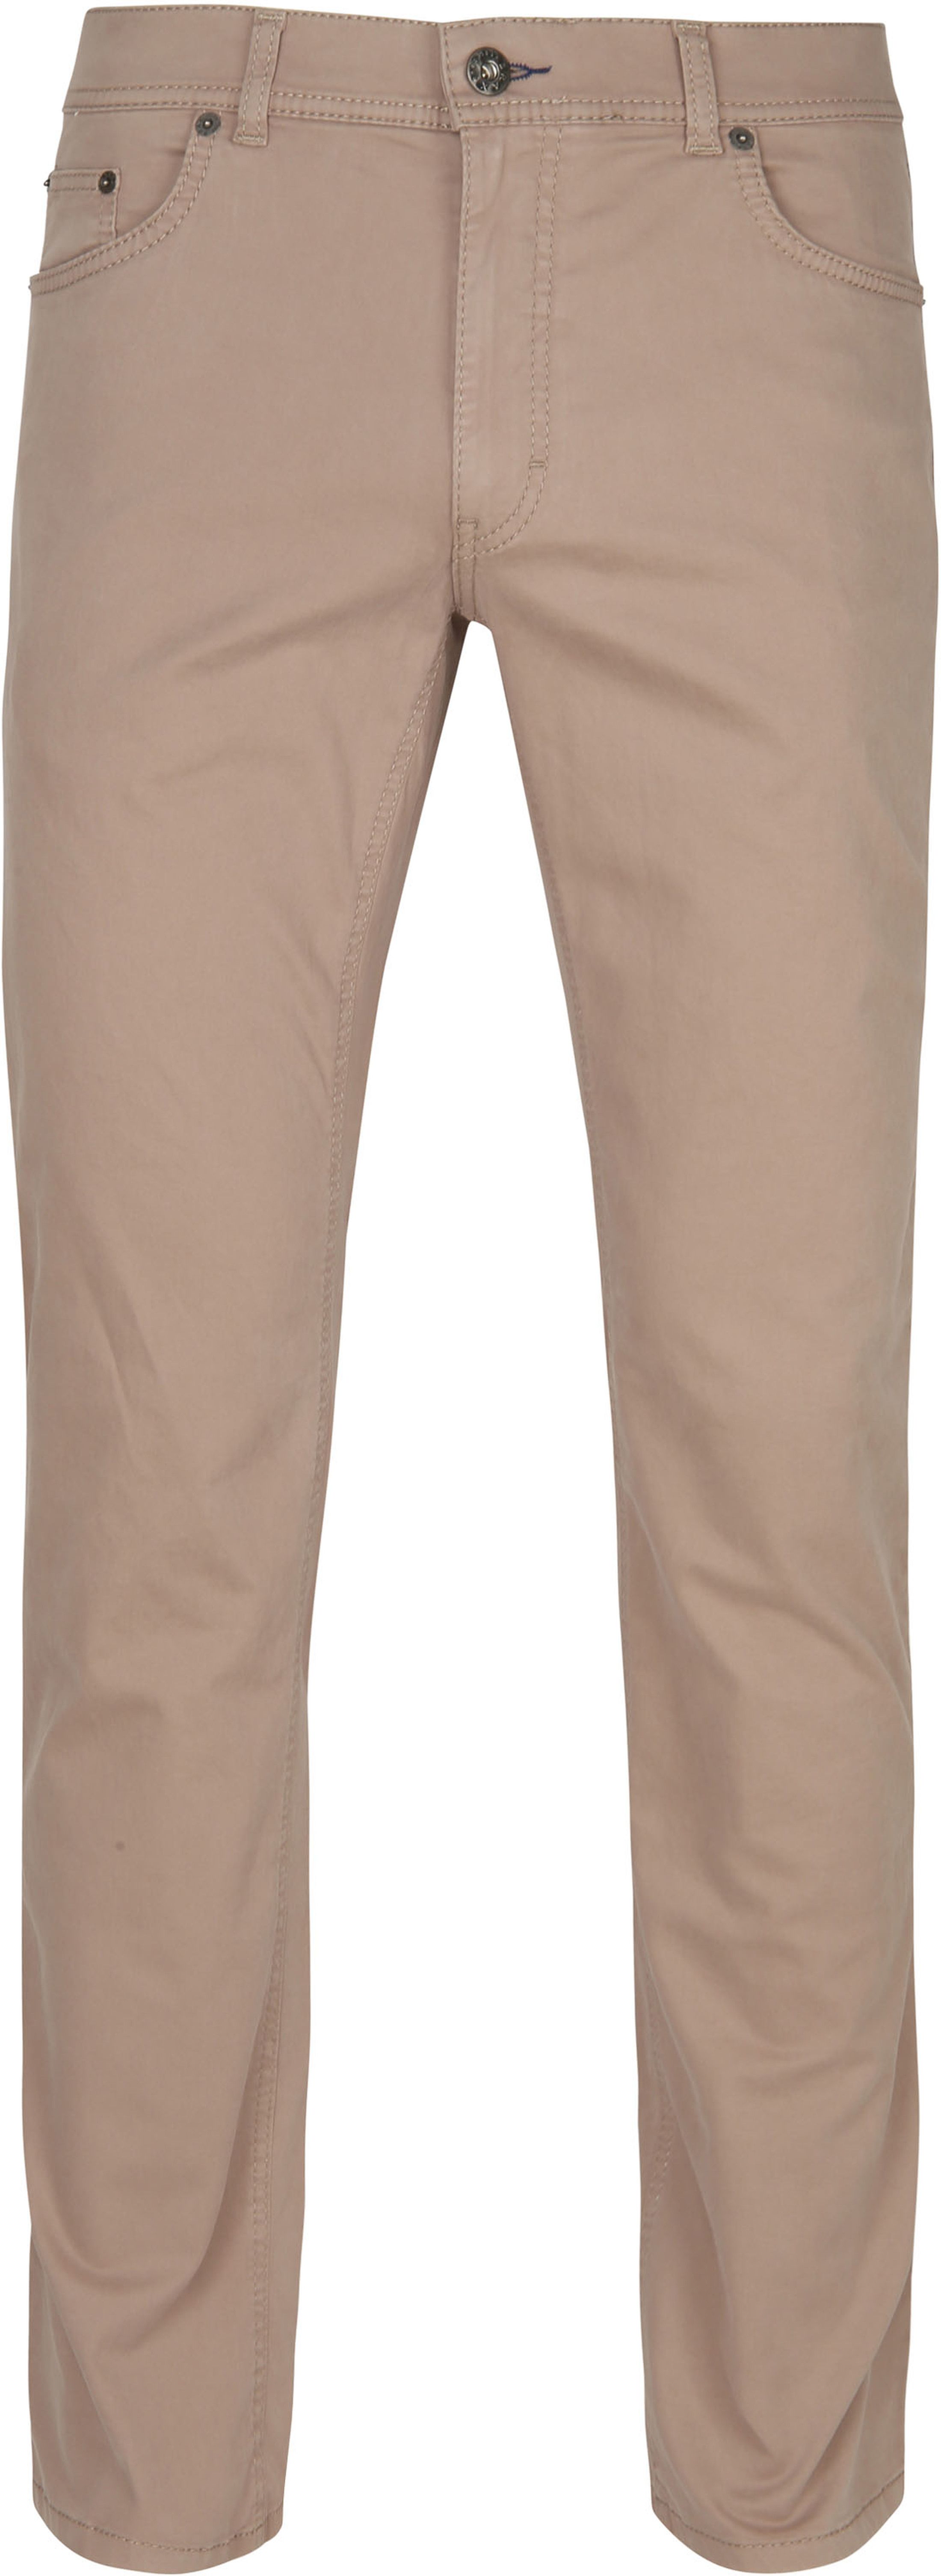 Brax Trousers Cooper Fancy Beige size W 44